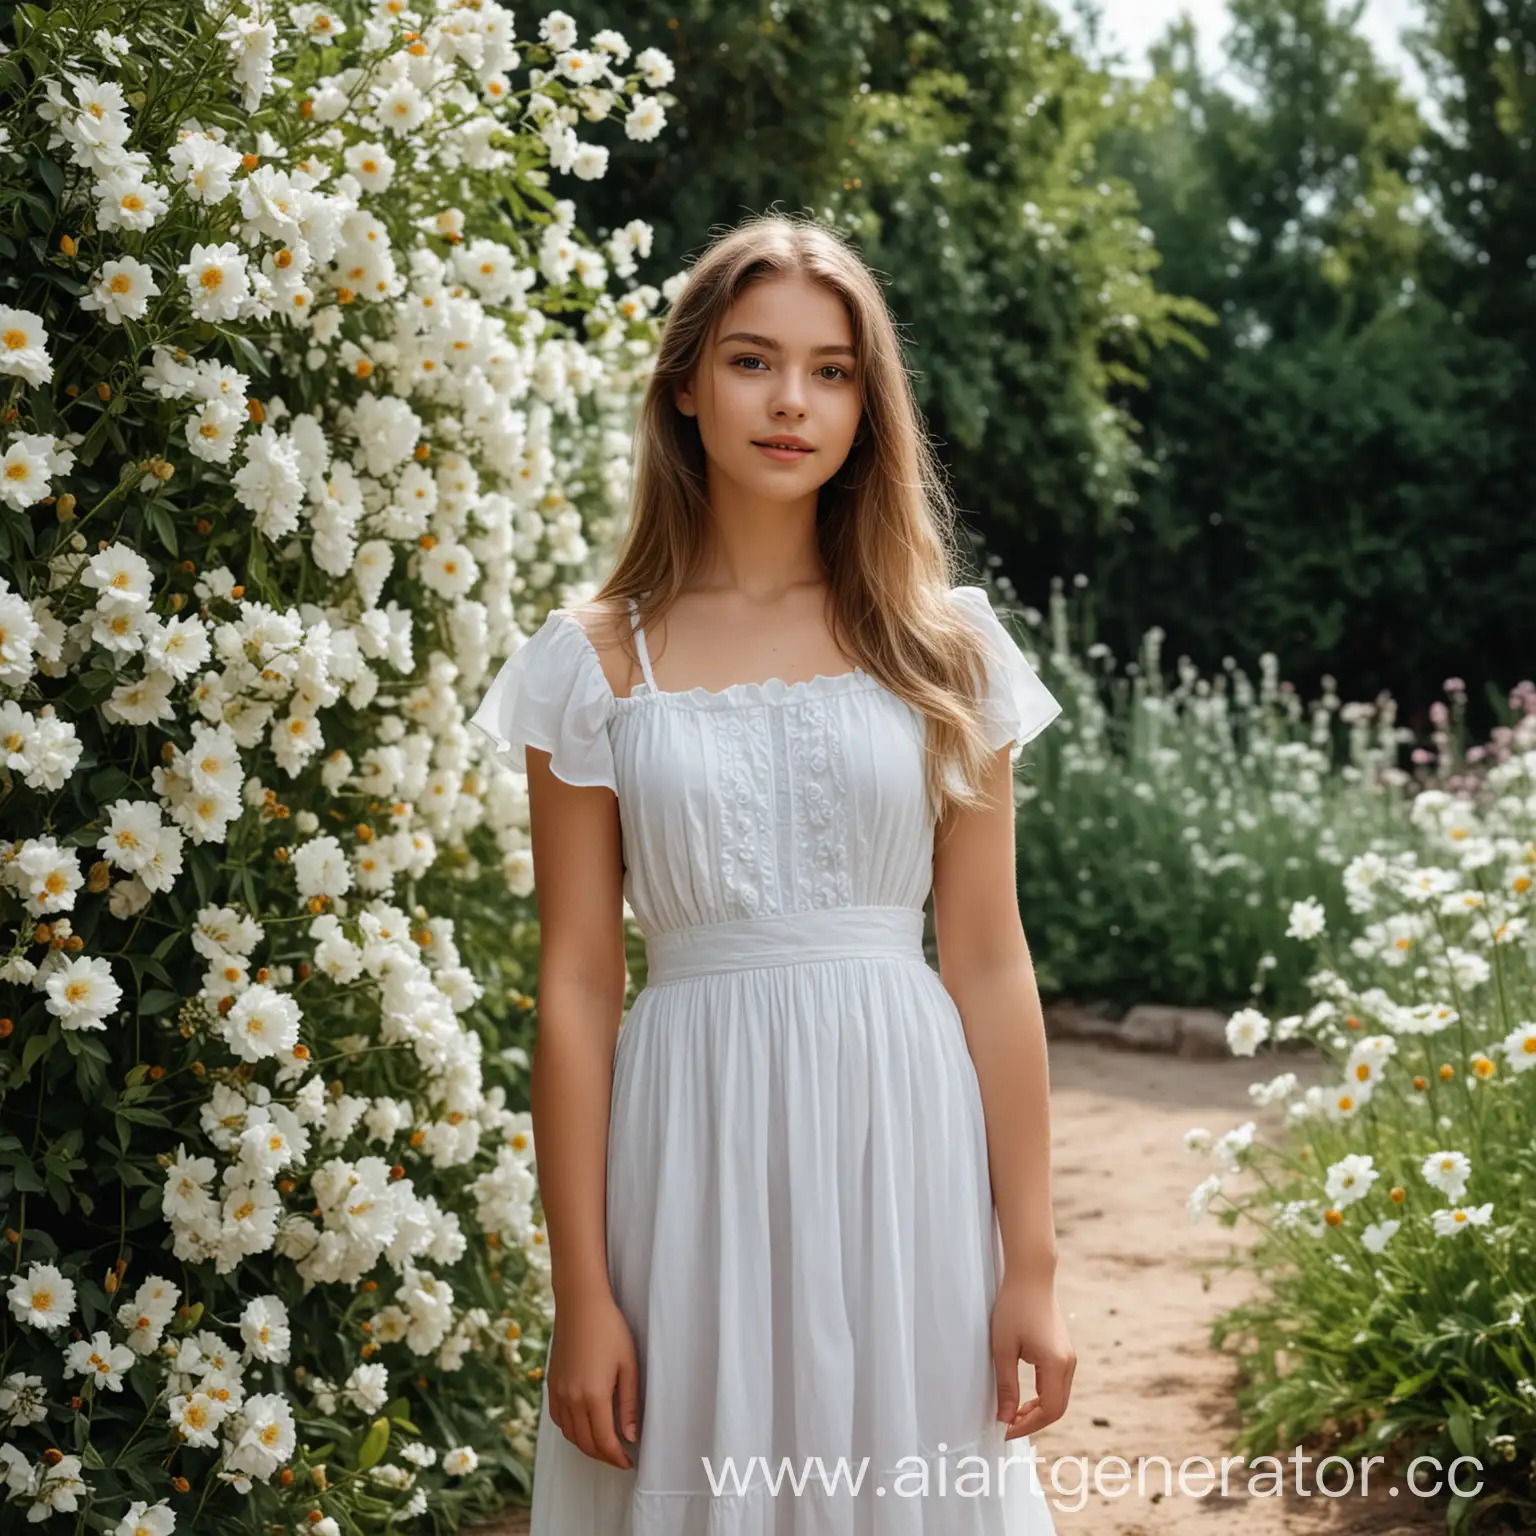 Girl-in-White-Dress-Amidst-Flower-Garden